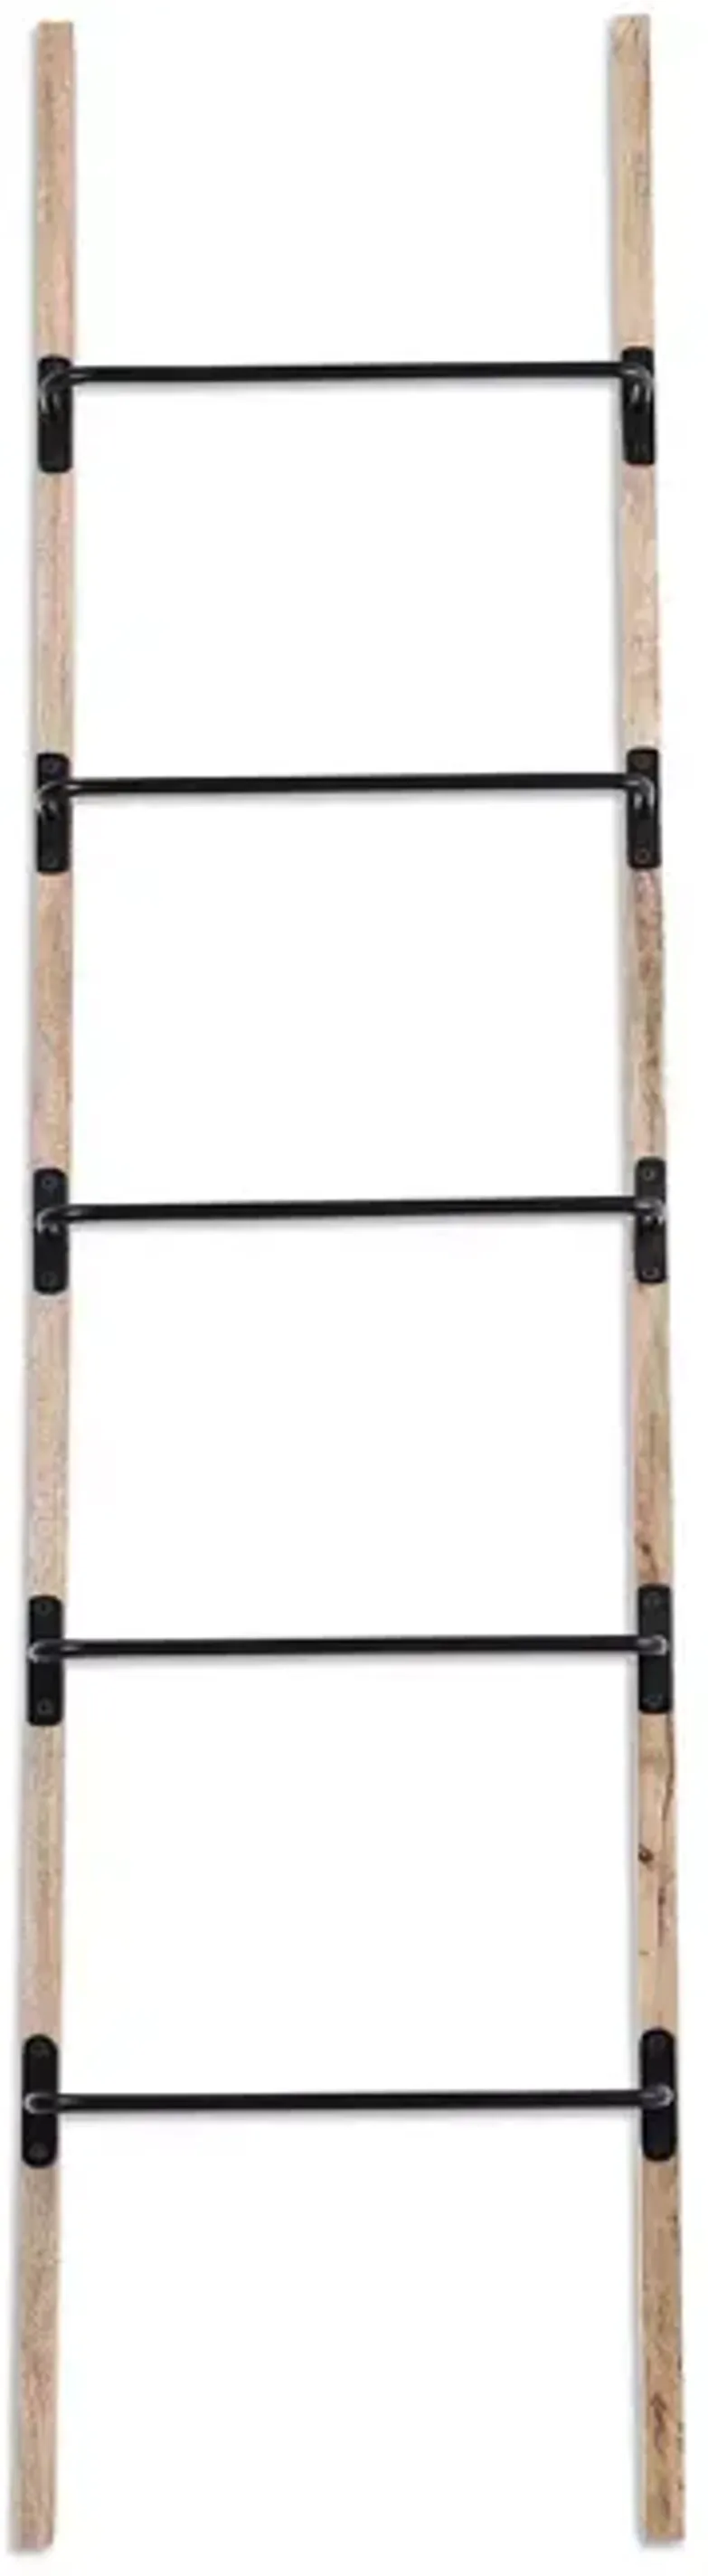 Ren-Wil Marieta Decorative Ladder for Throws